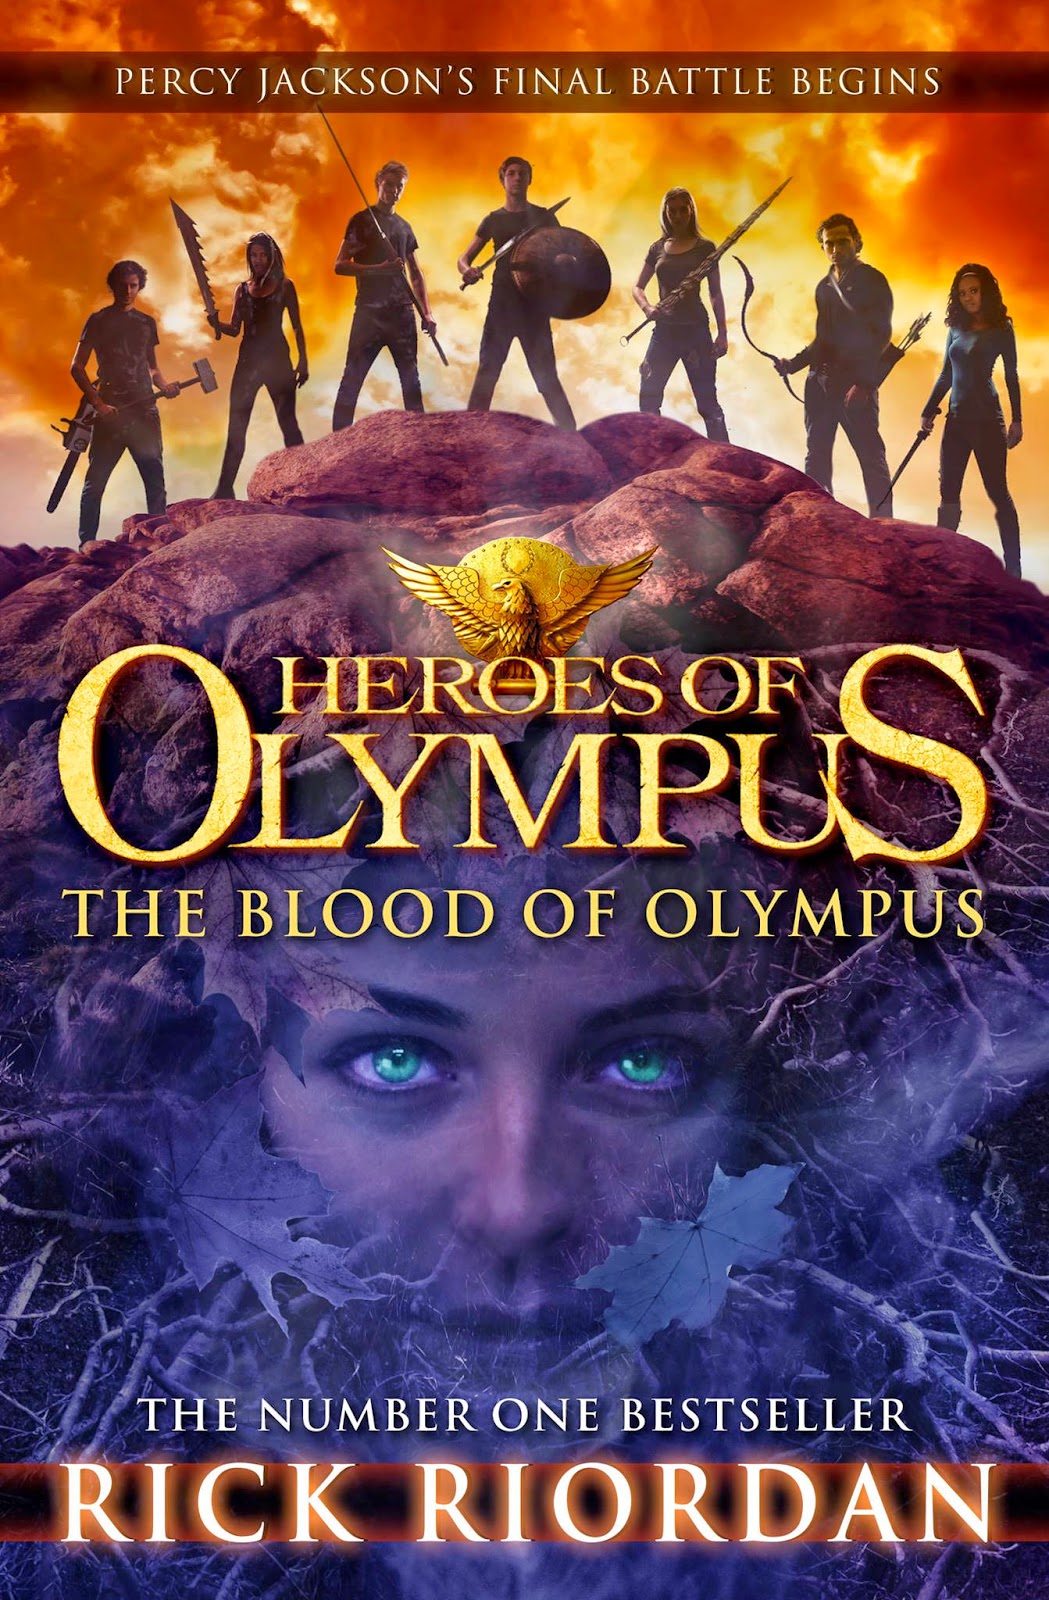 Rick Riordan: The Blood of Olympus (The Heroes of Olympus #5)